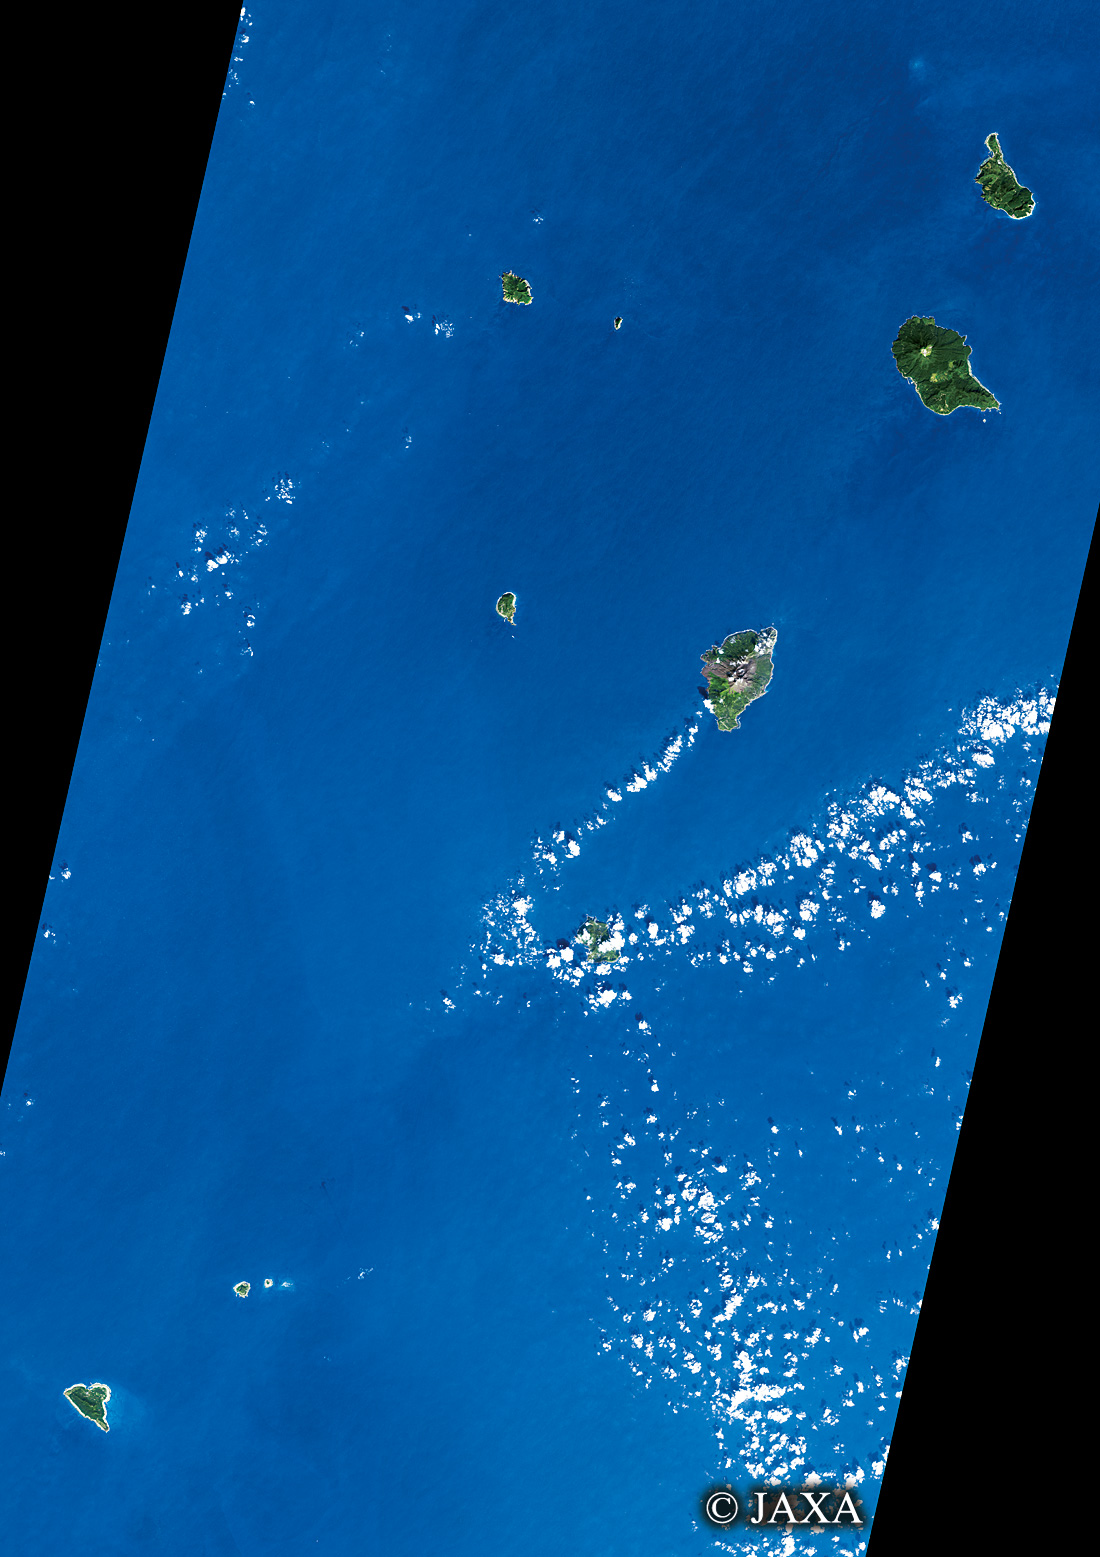 だいちから見た日本の都市 トカラ列島:衛星画像